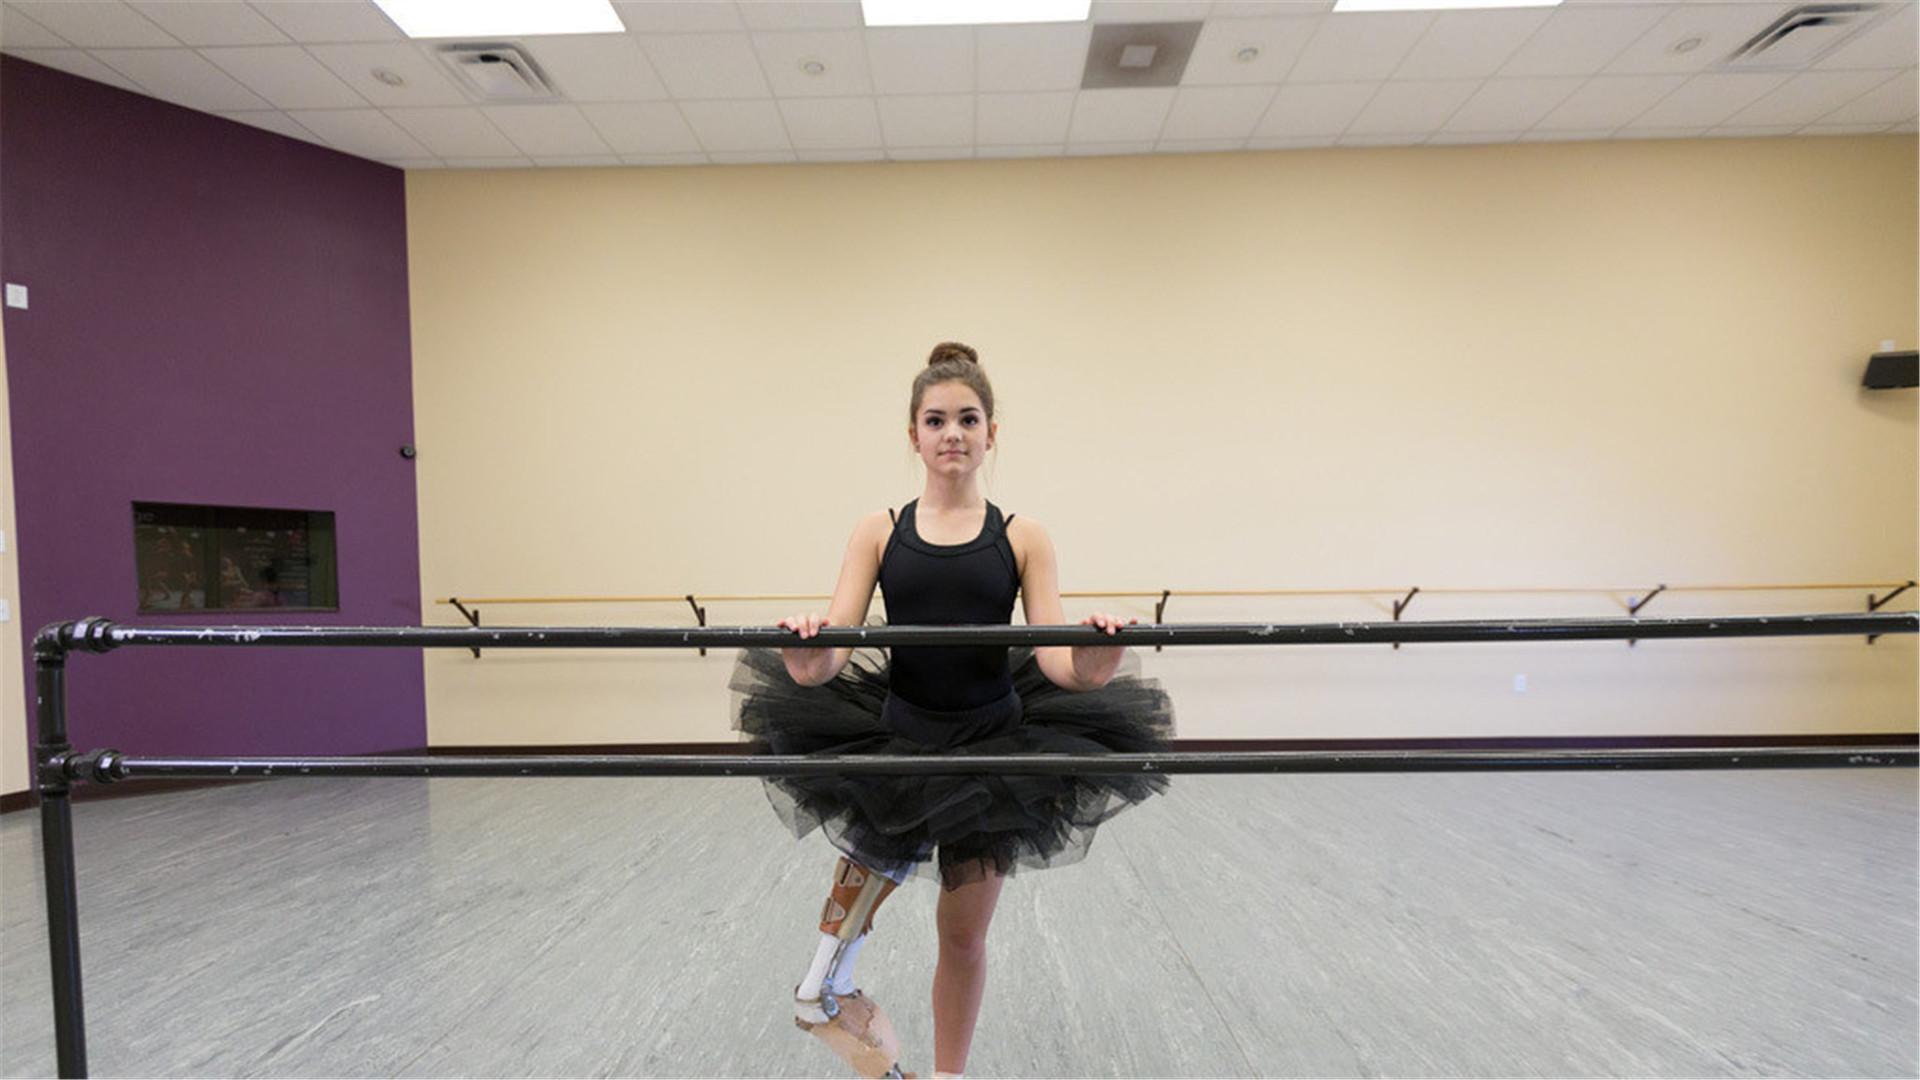 这个故事的主人公是美国密苏里女孩gabi shull,今年14岁,酷爱芭蕾舞